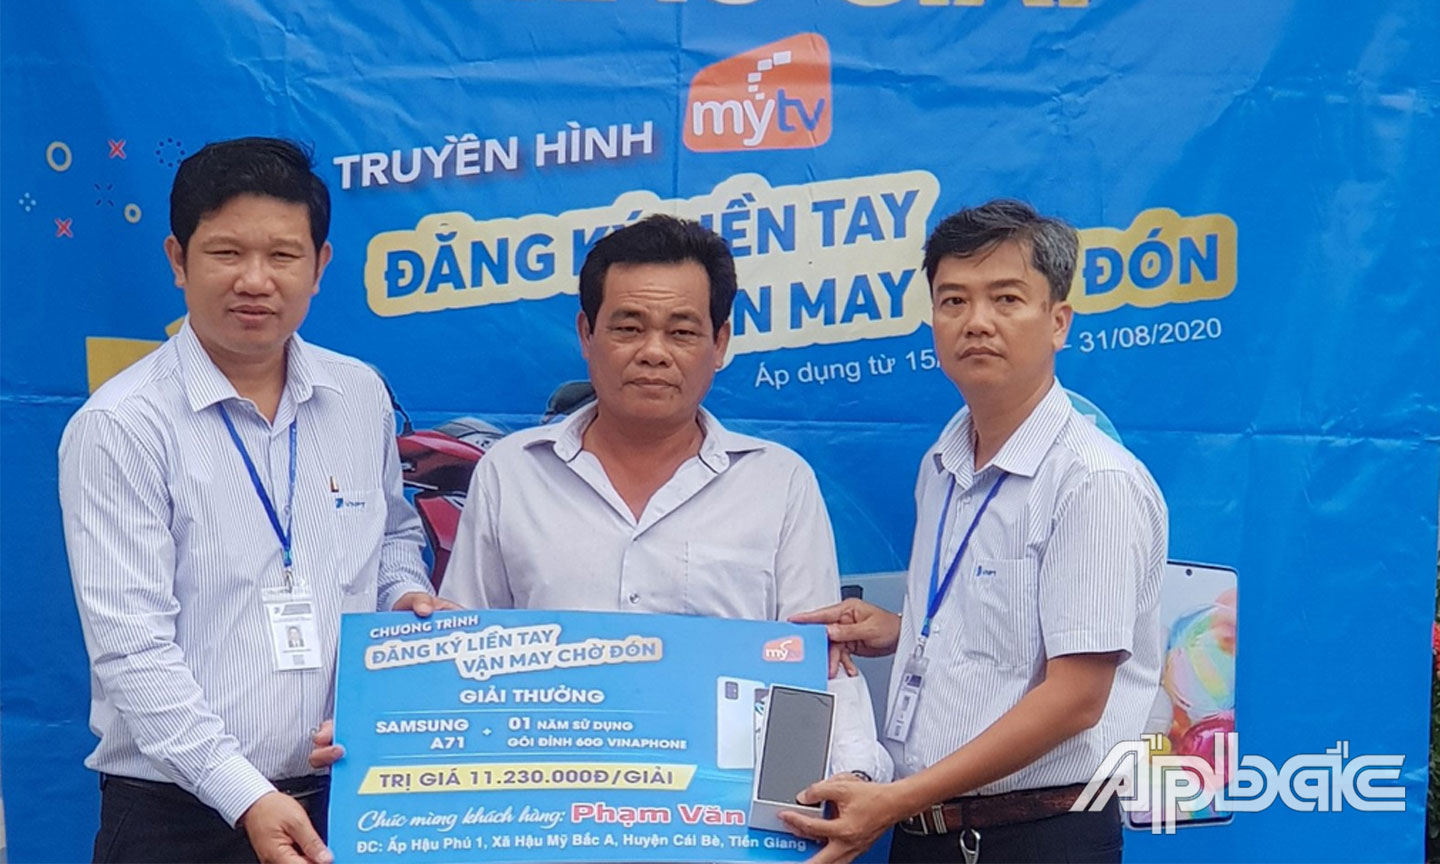 Ông Nguyễn Hoài Linh - PGD VNPT-VinaPhone Tiền Giang & Ông Võ Anh Sơn- GD VinaPhone Cái Bè trao thưởng cho khách hàng Phạm Văn Mỹ.